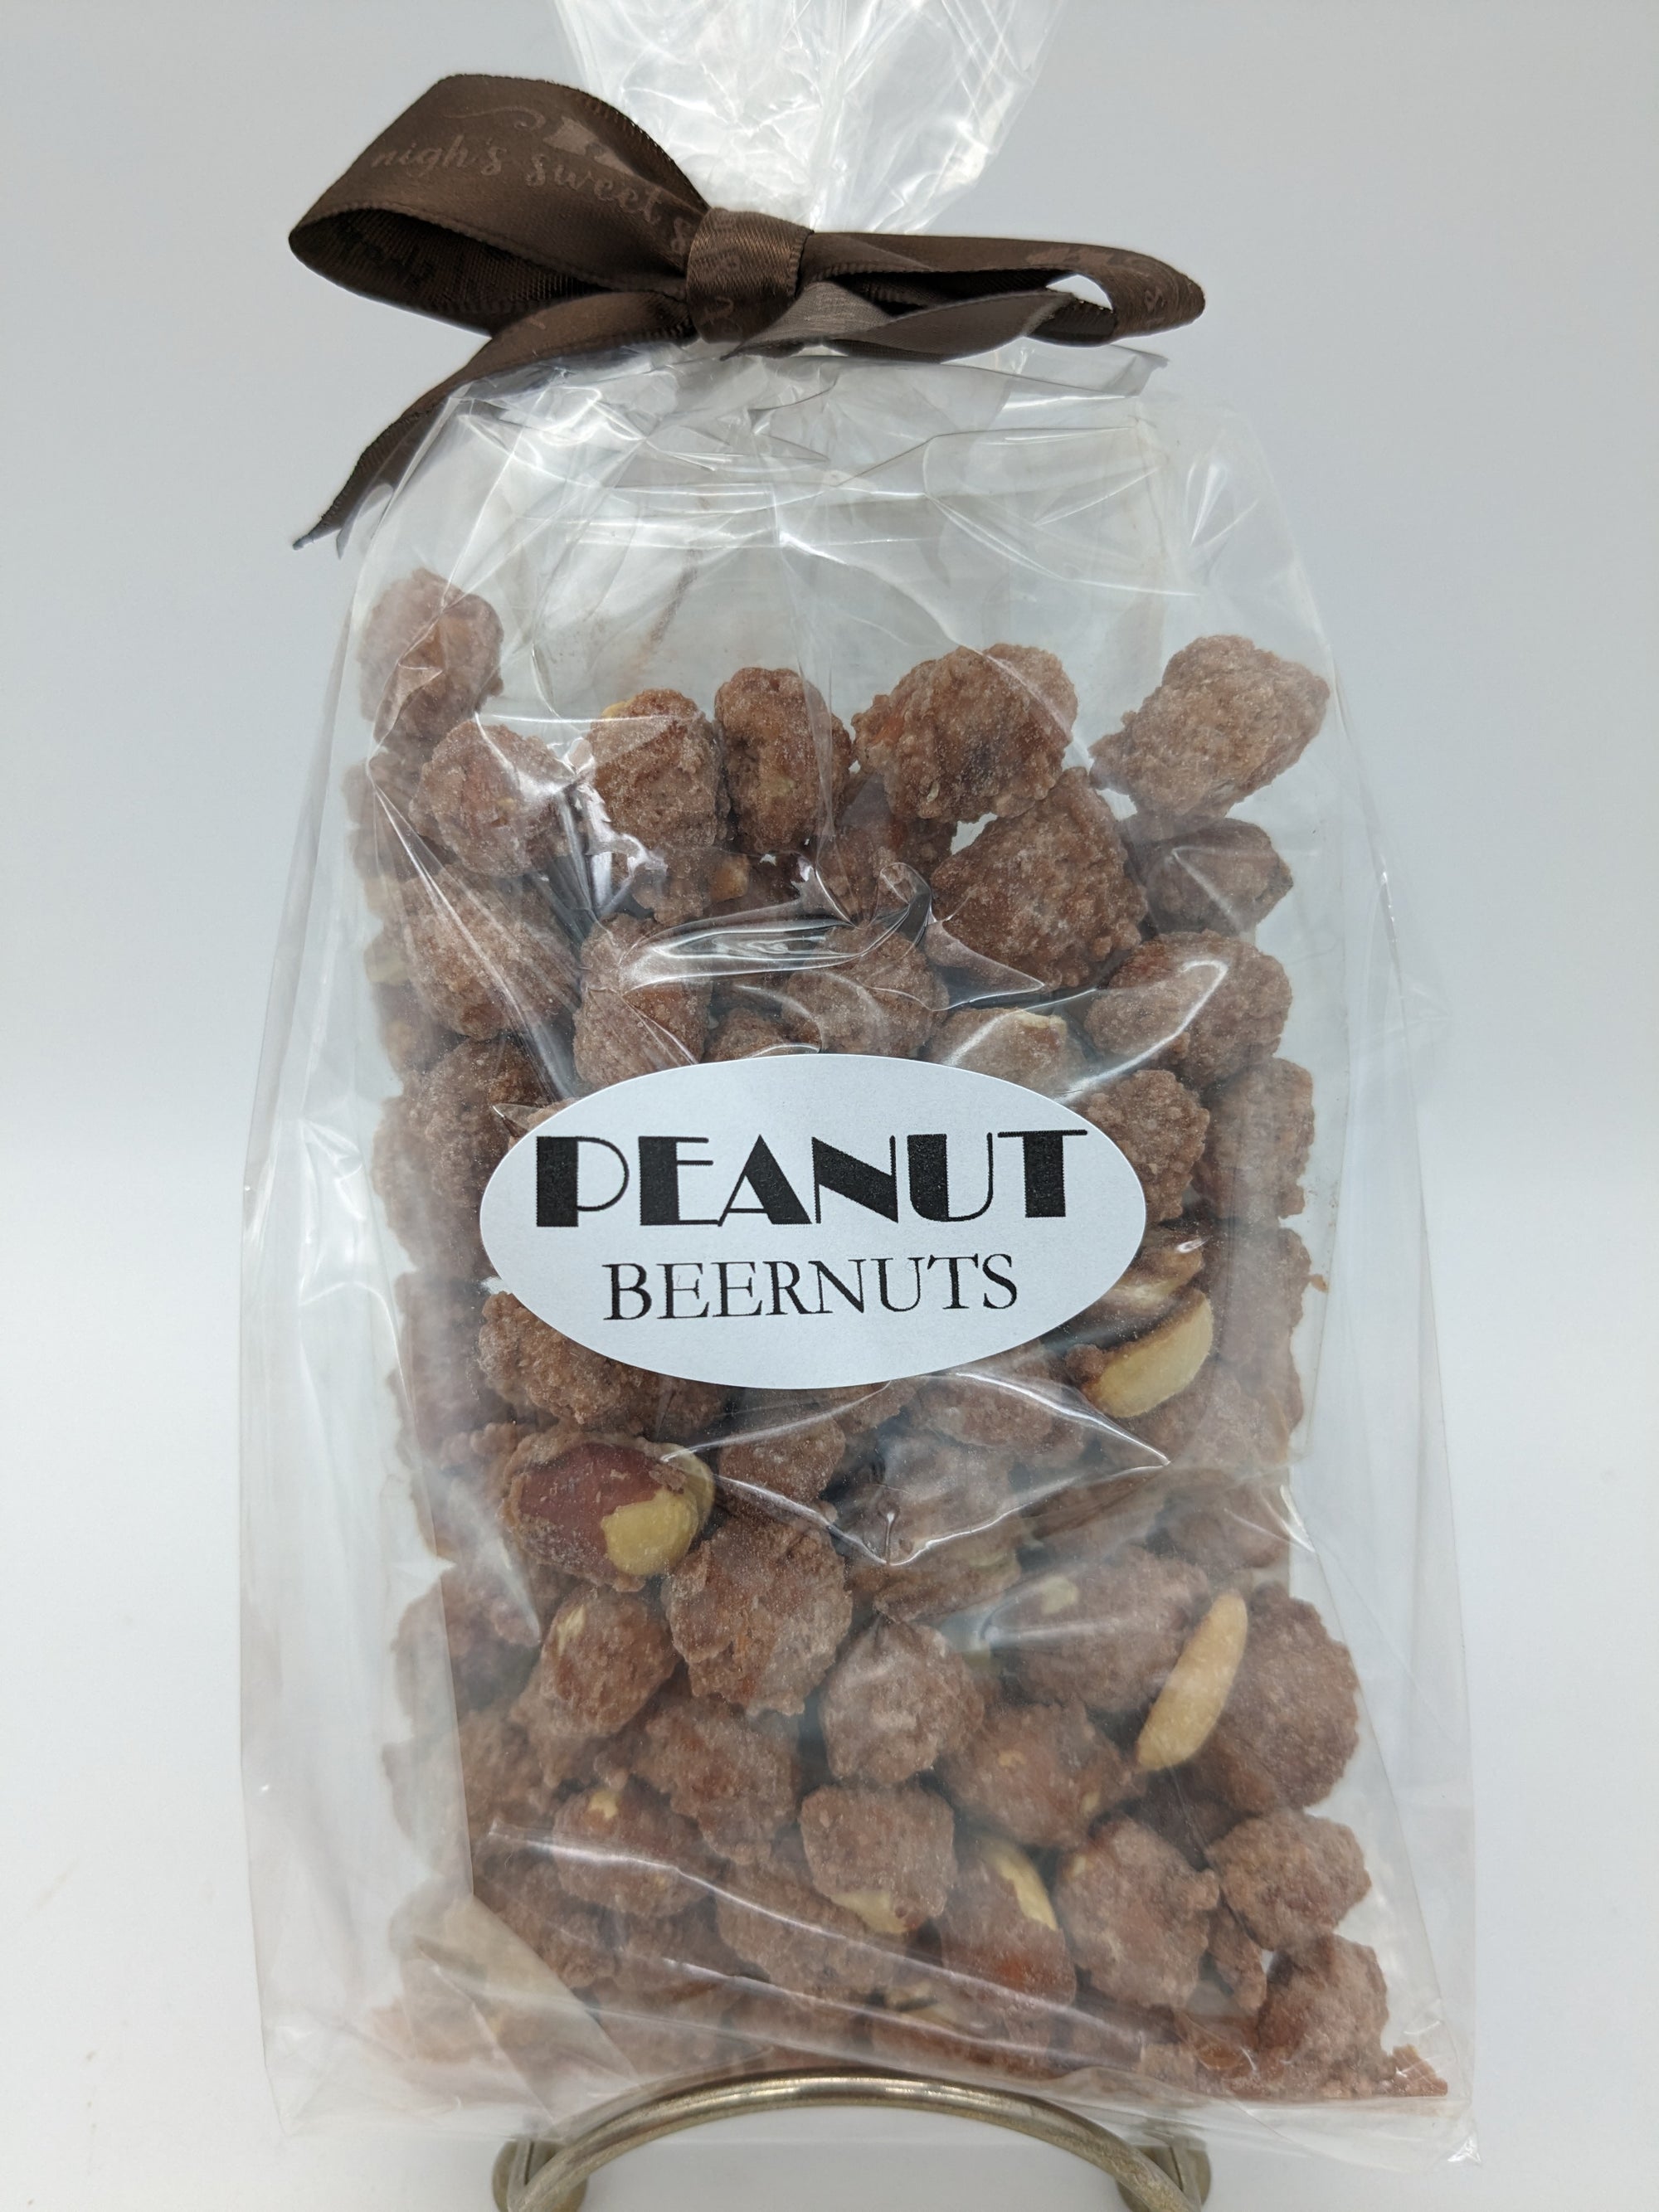 Peanut Beernuts